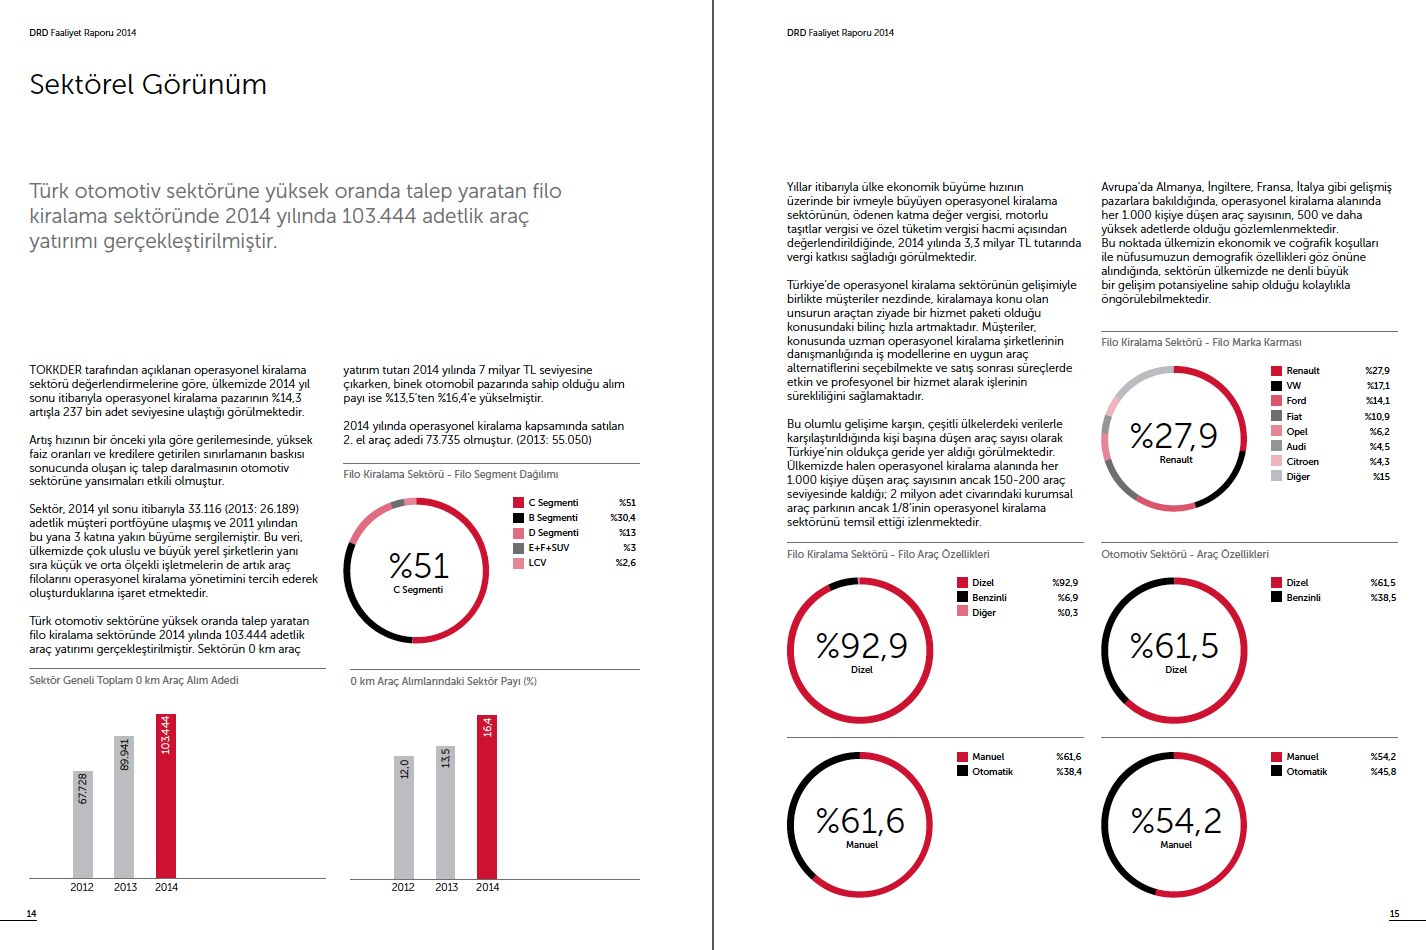 DRD / 2014 Faaliyet Raporu / 2014 Annual Report